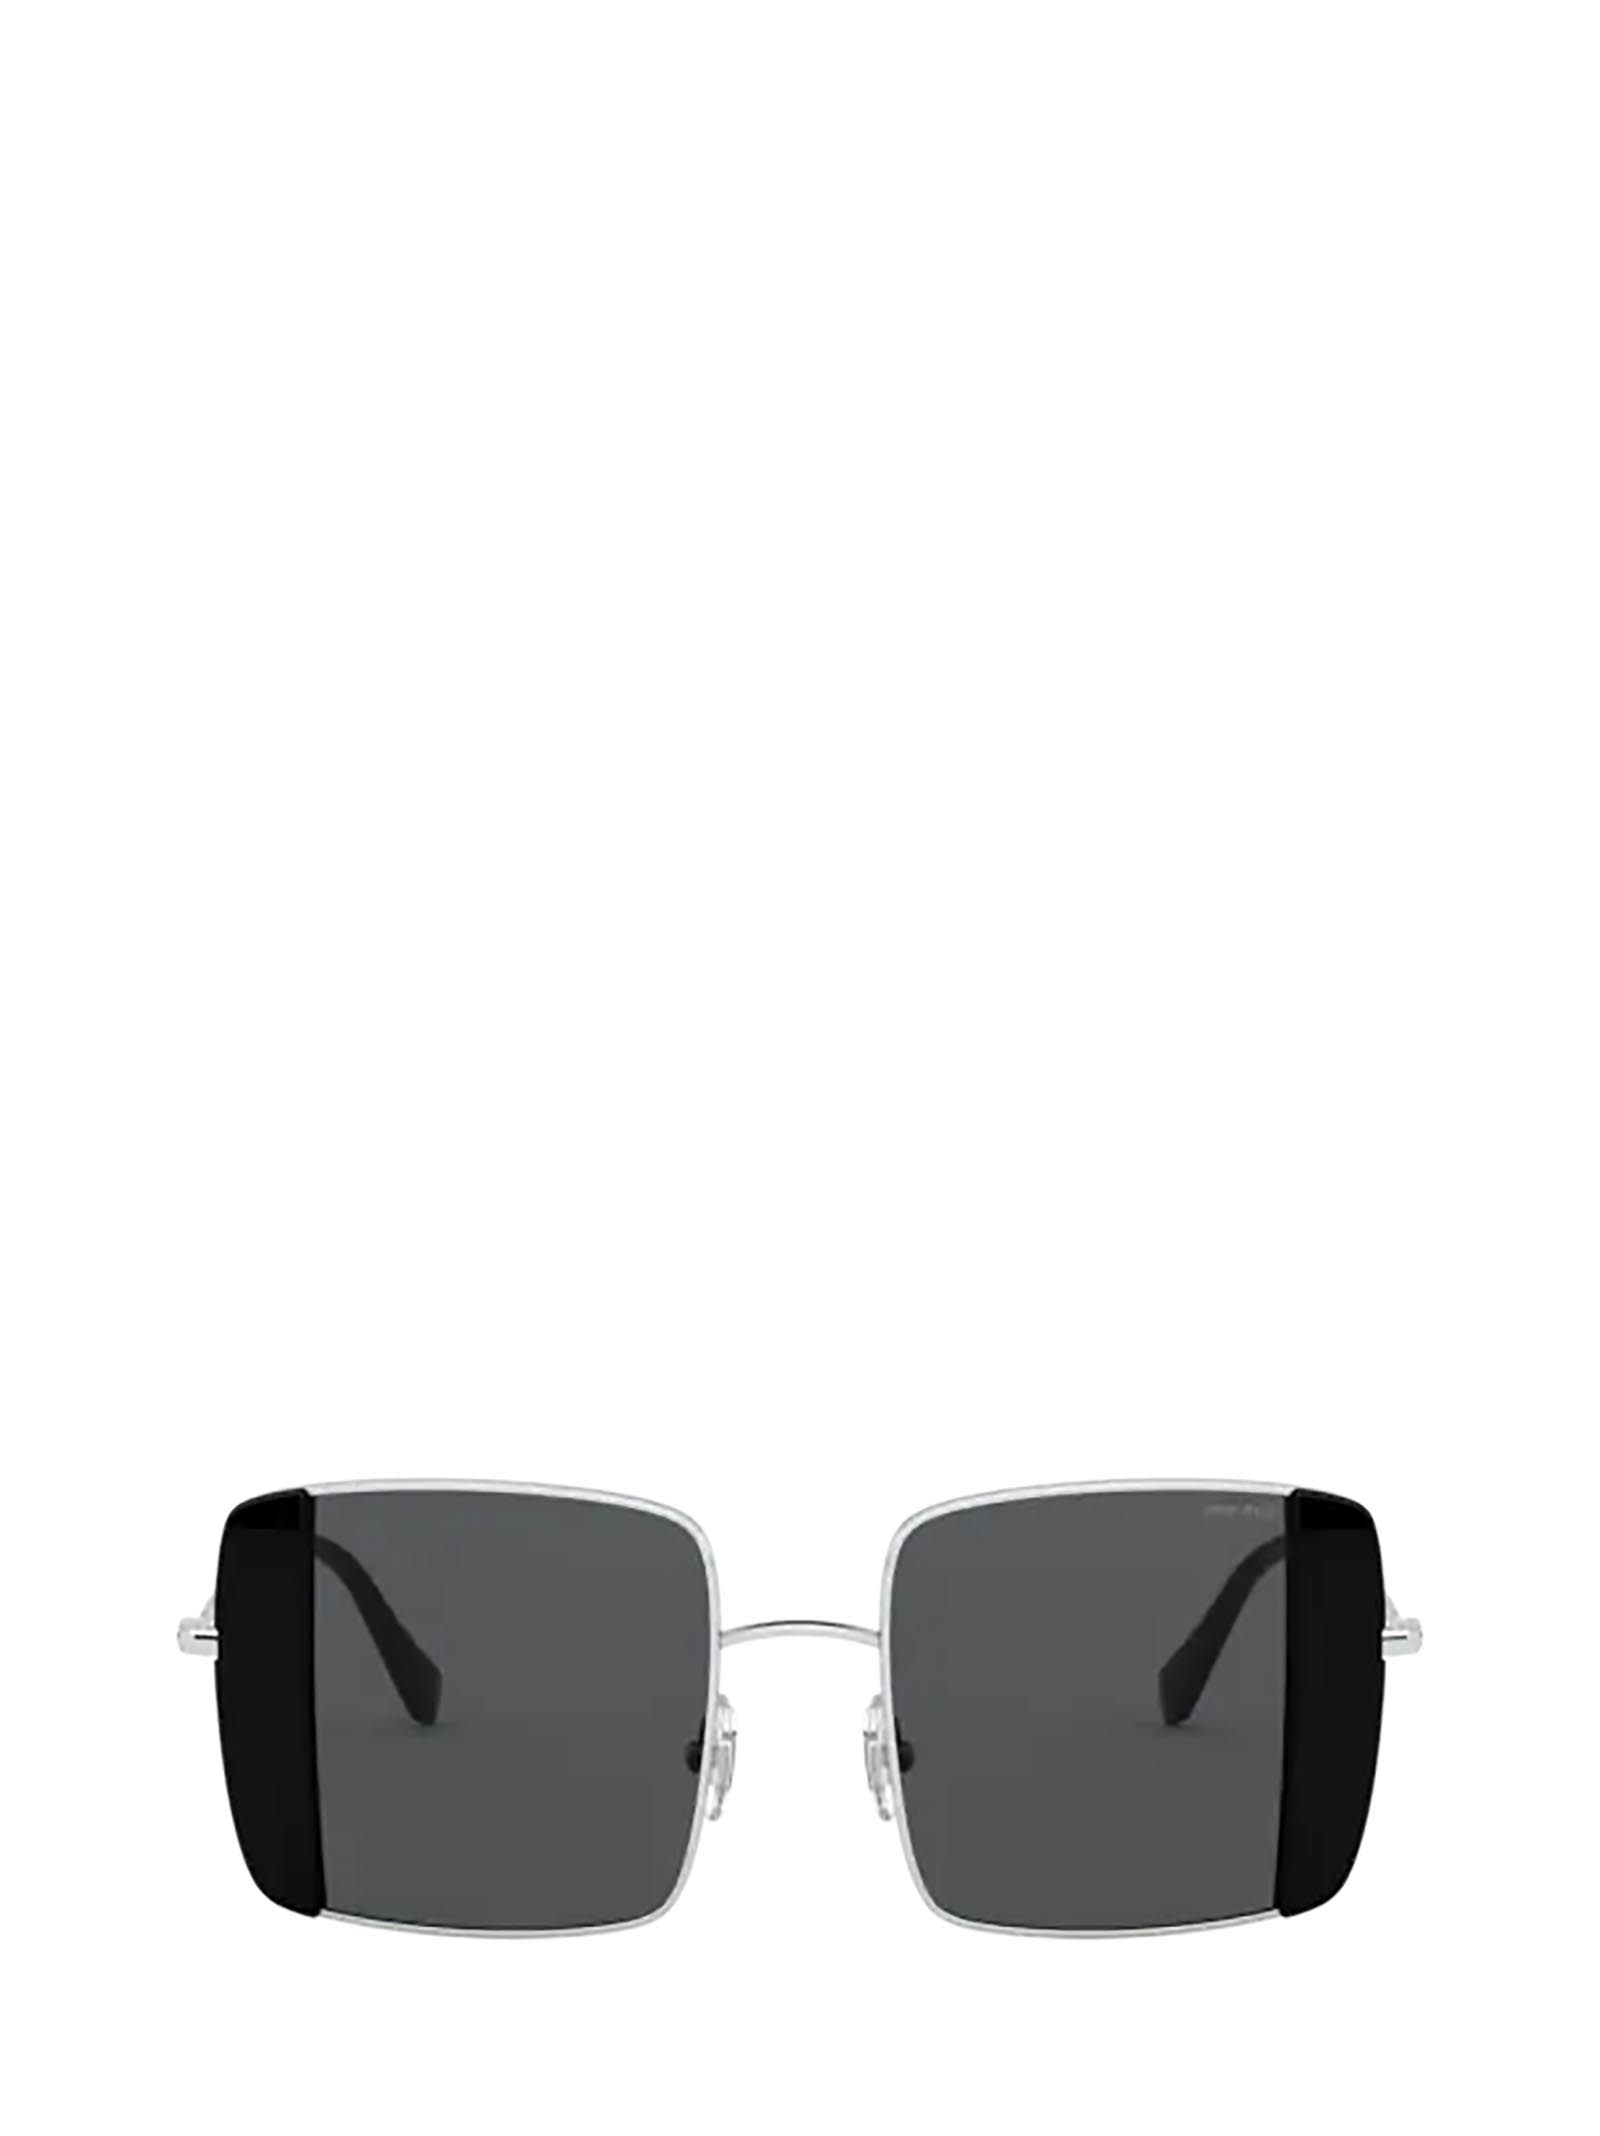 Miu Miu Miu Miu Mu 56vs Silver / Black Sunglasses